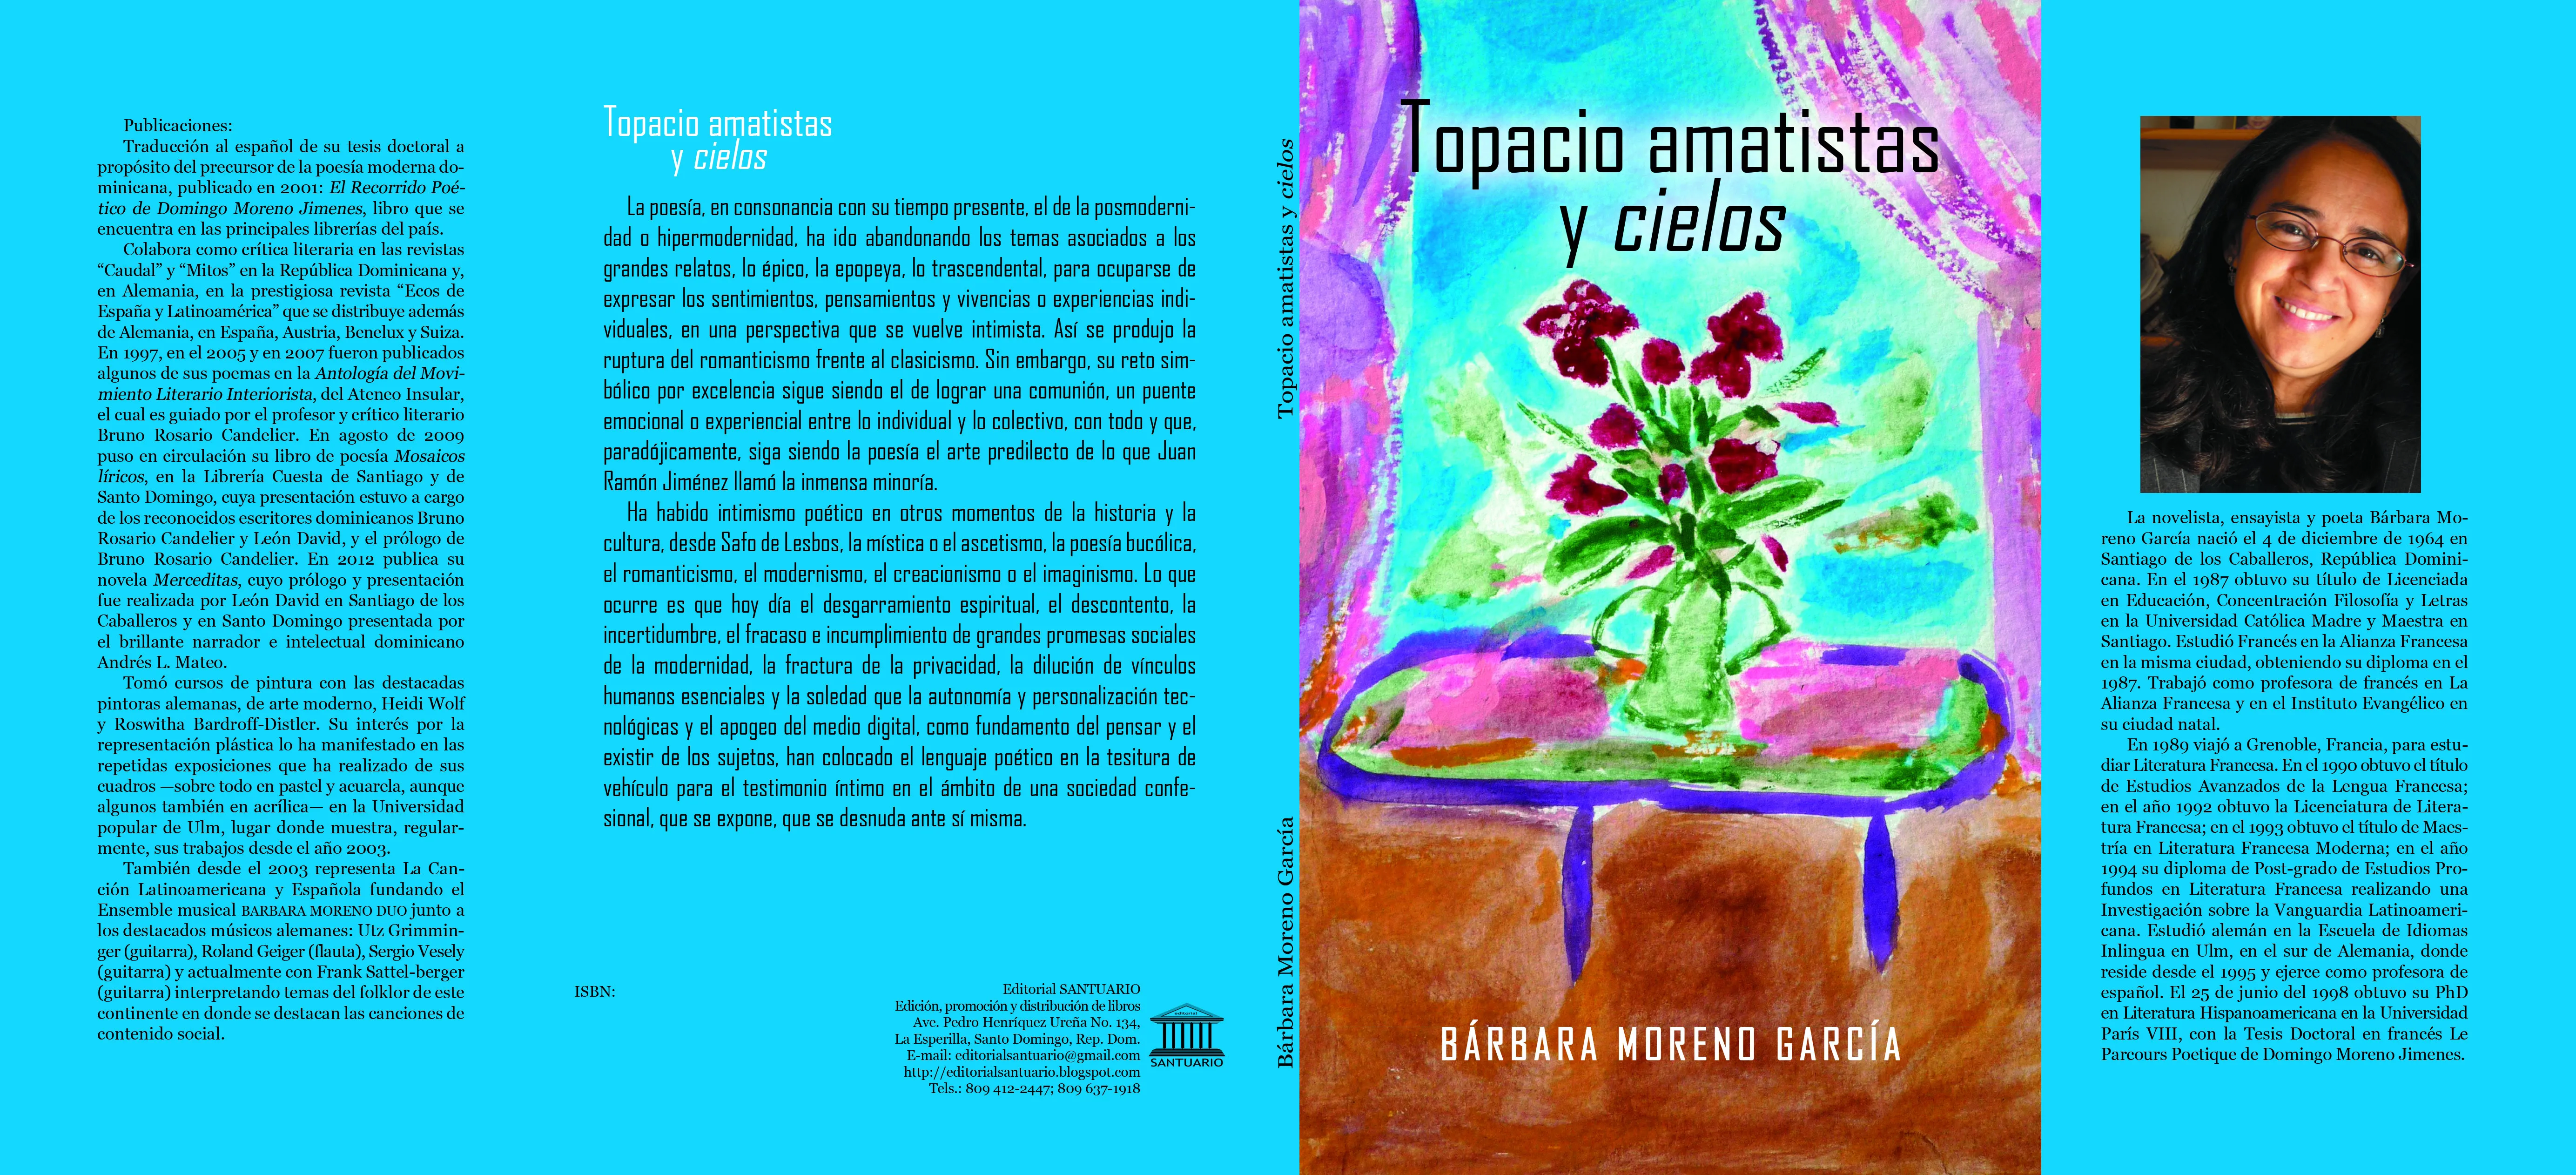 Topacio amatistas y cielos, de Bárbara Moreno García